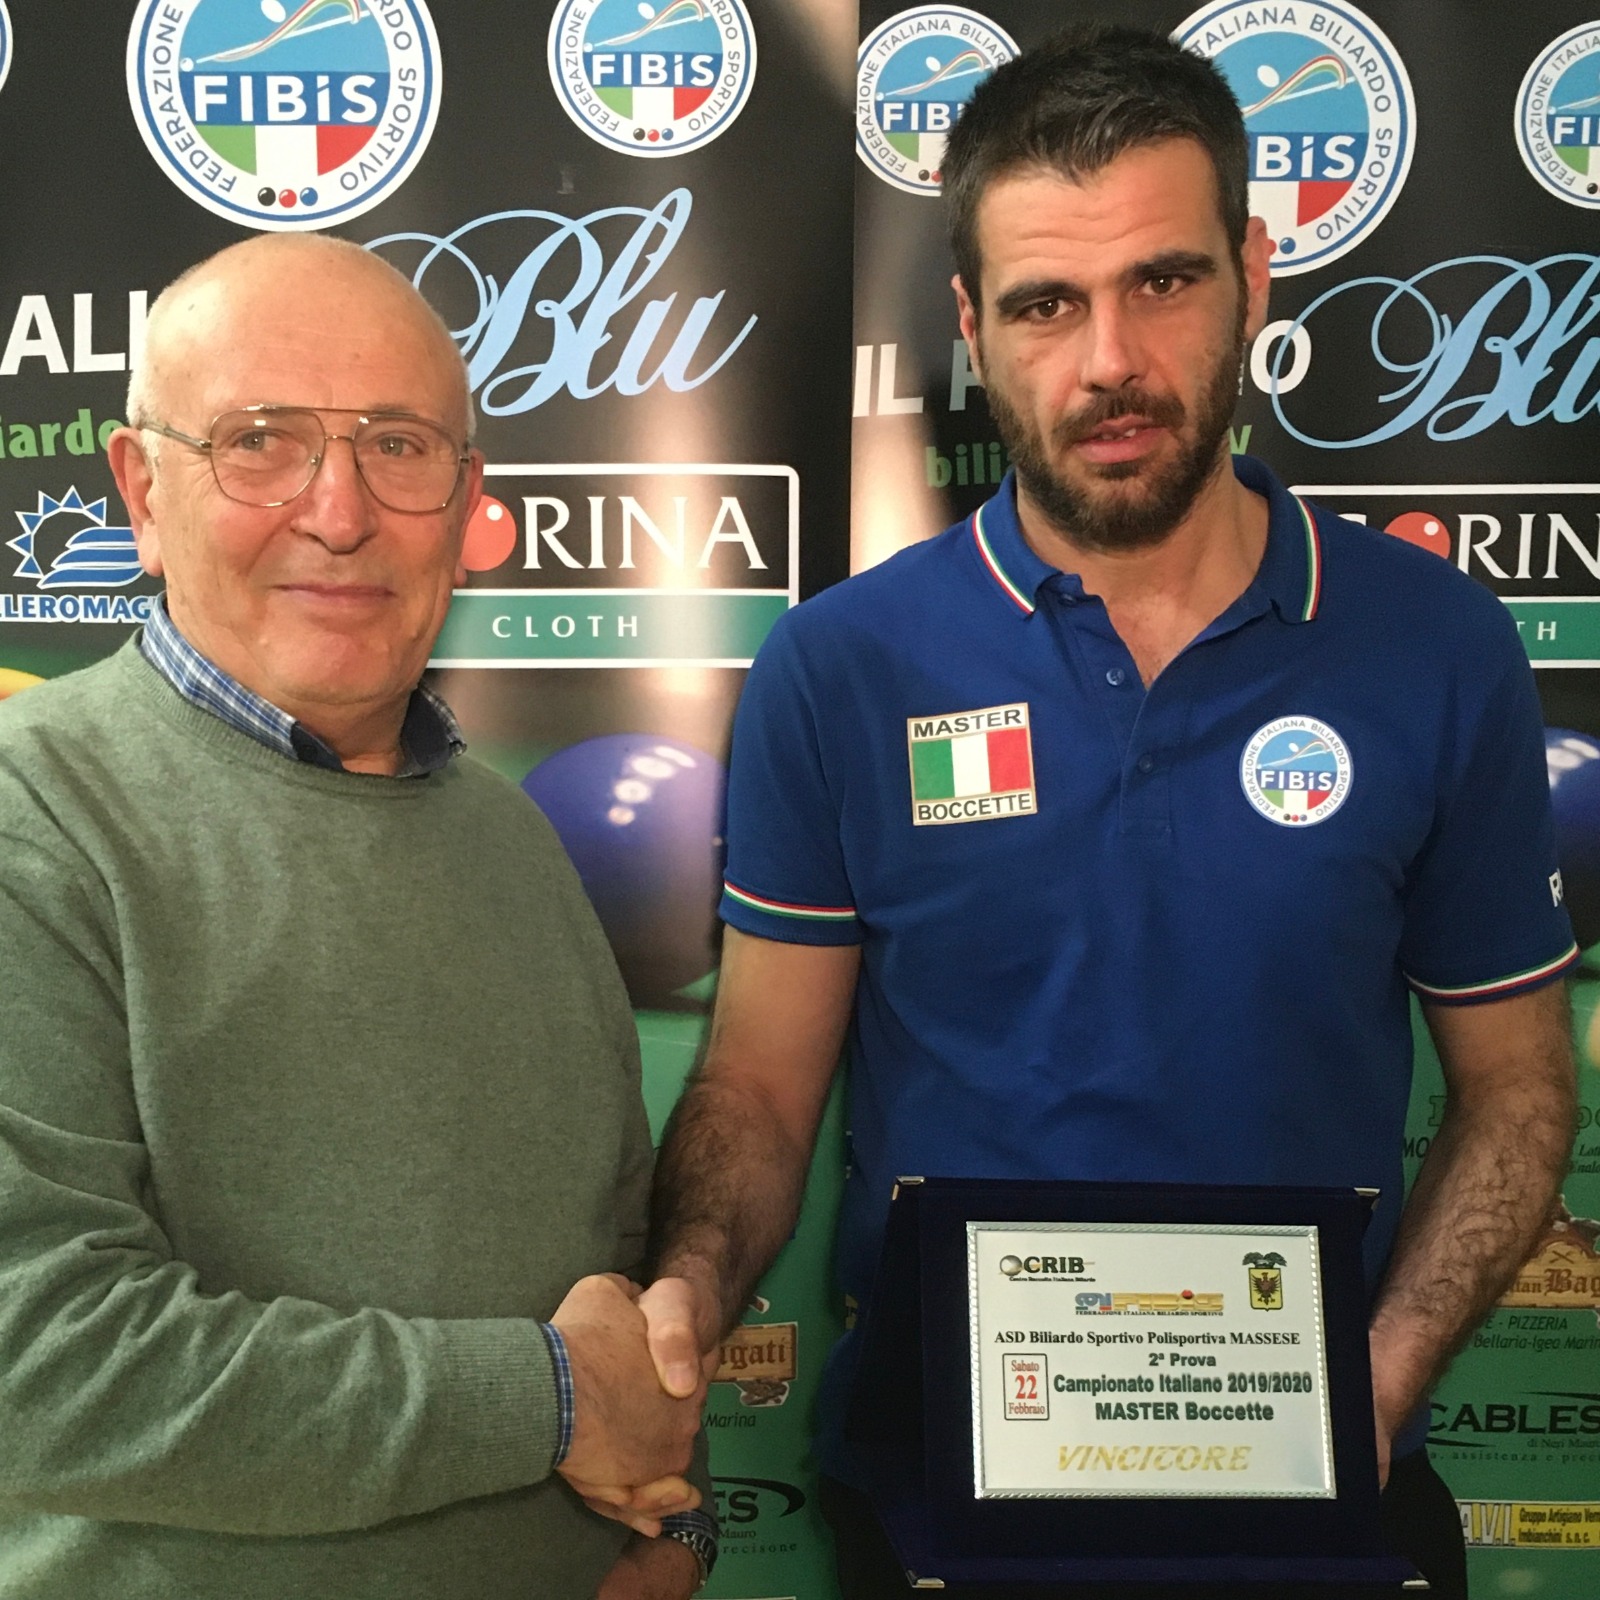 Campionato italiano master boccette - seconda tappa